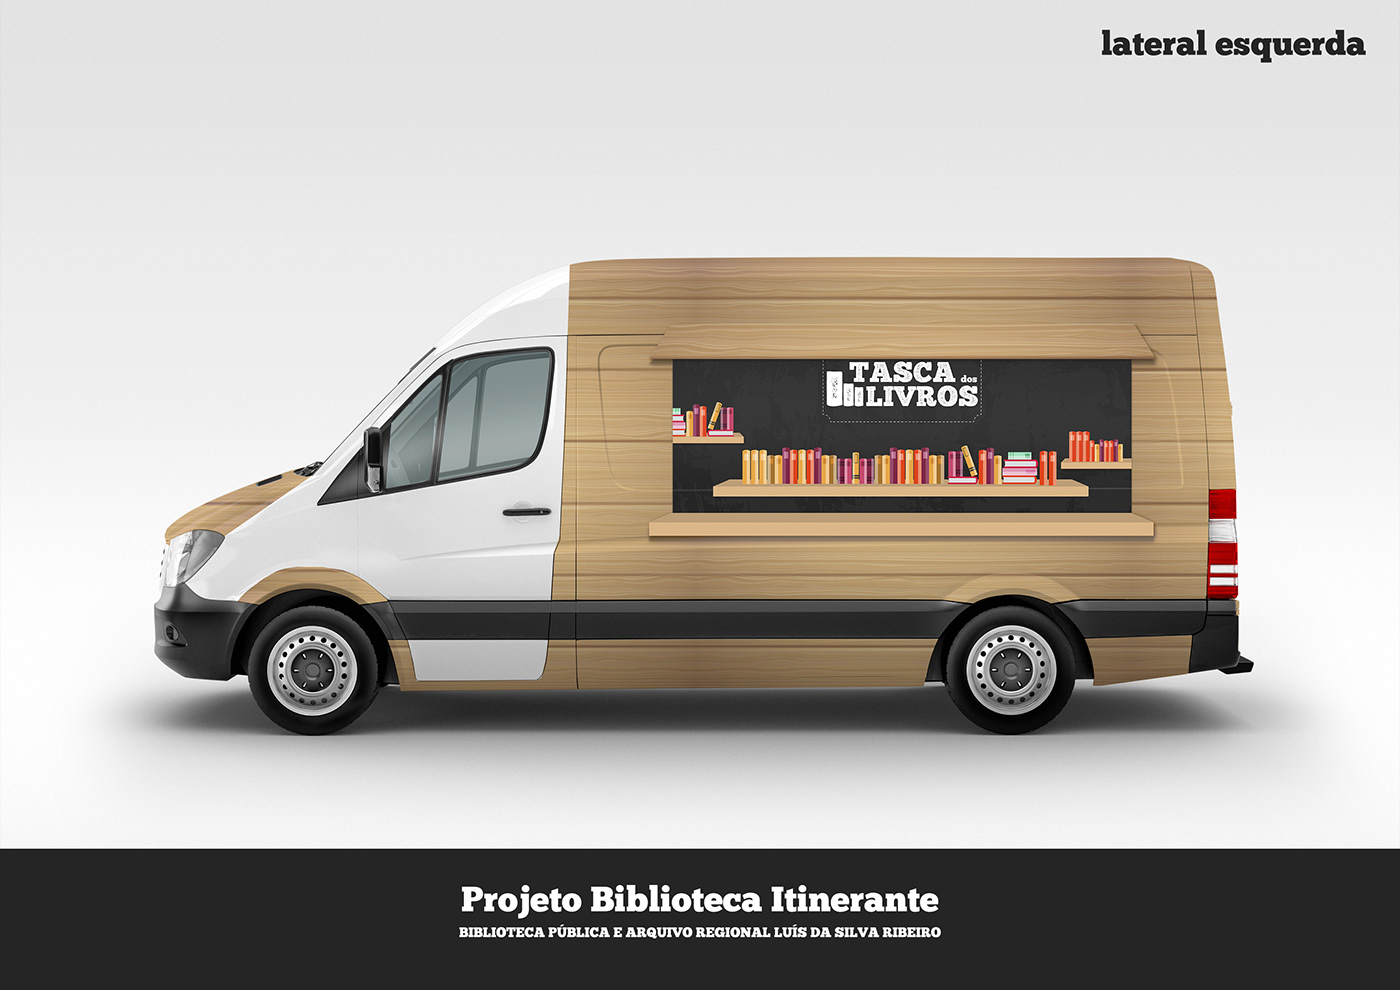 Biblioteca itinerante graphic design  public library